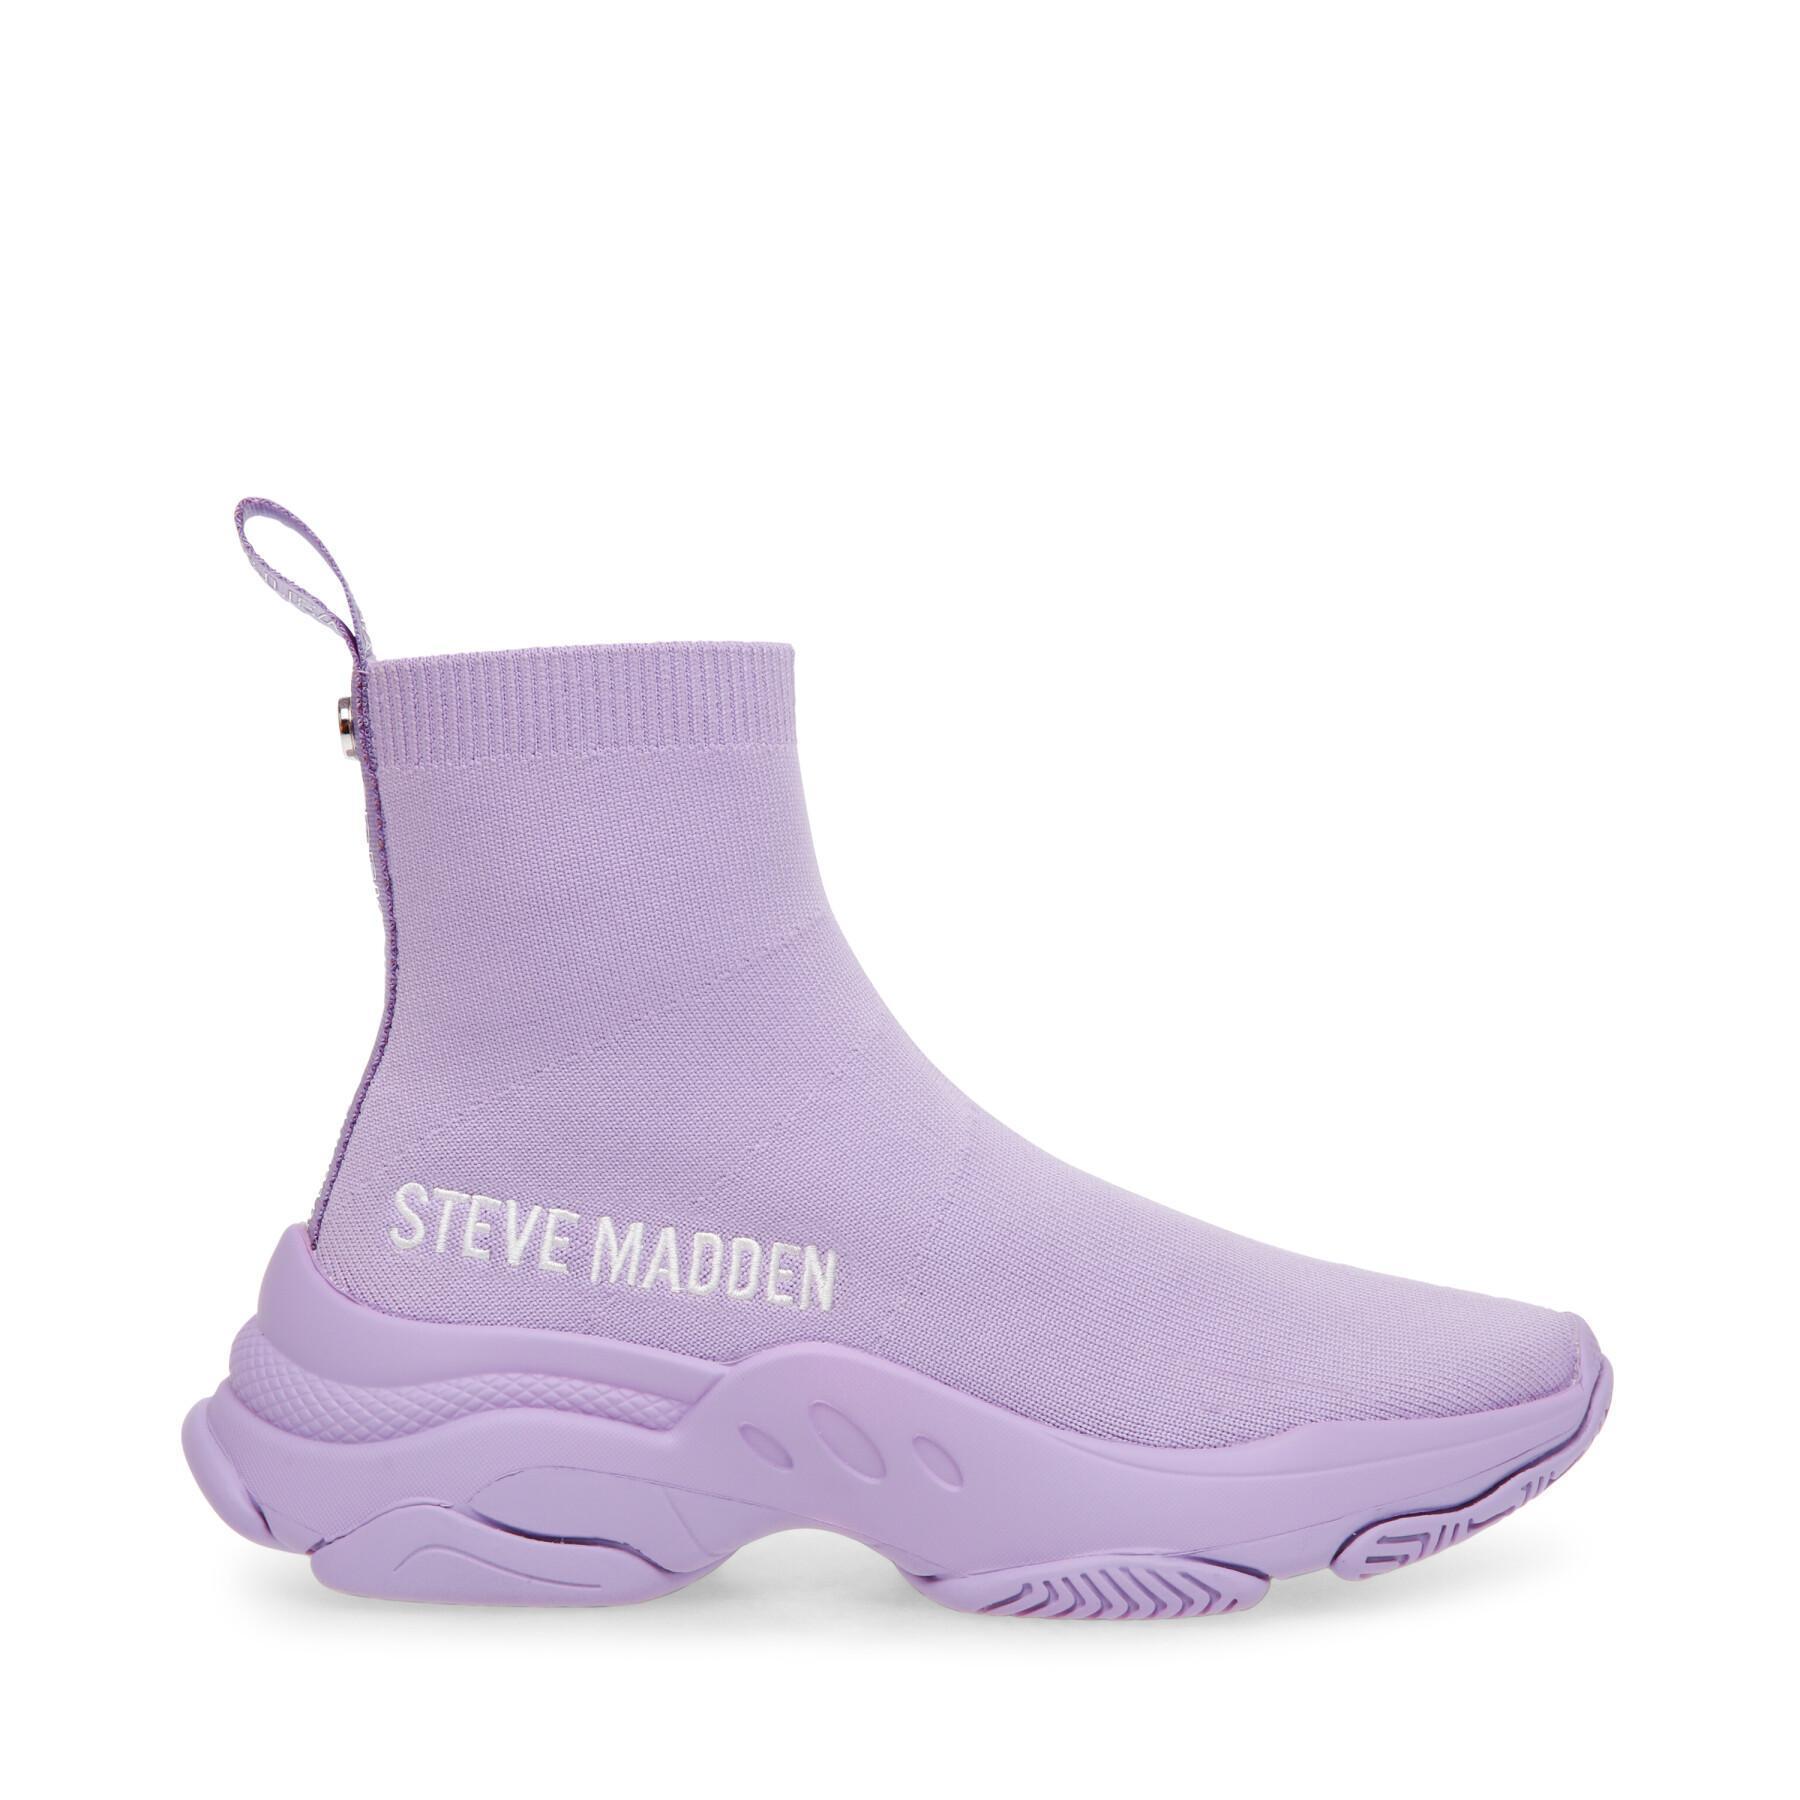 Zapatillas de deporte para mujer Steve Madden Master